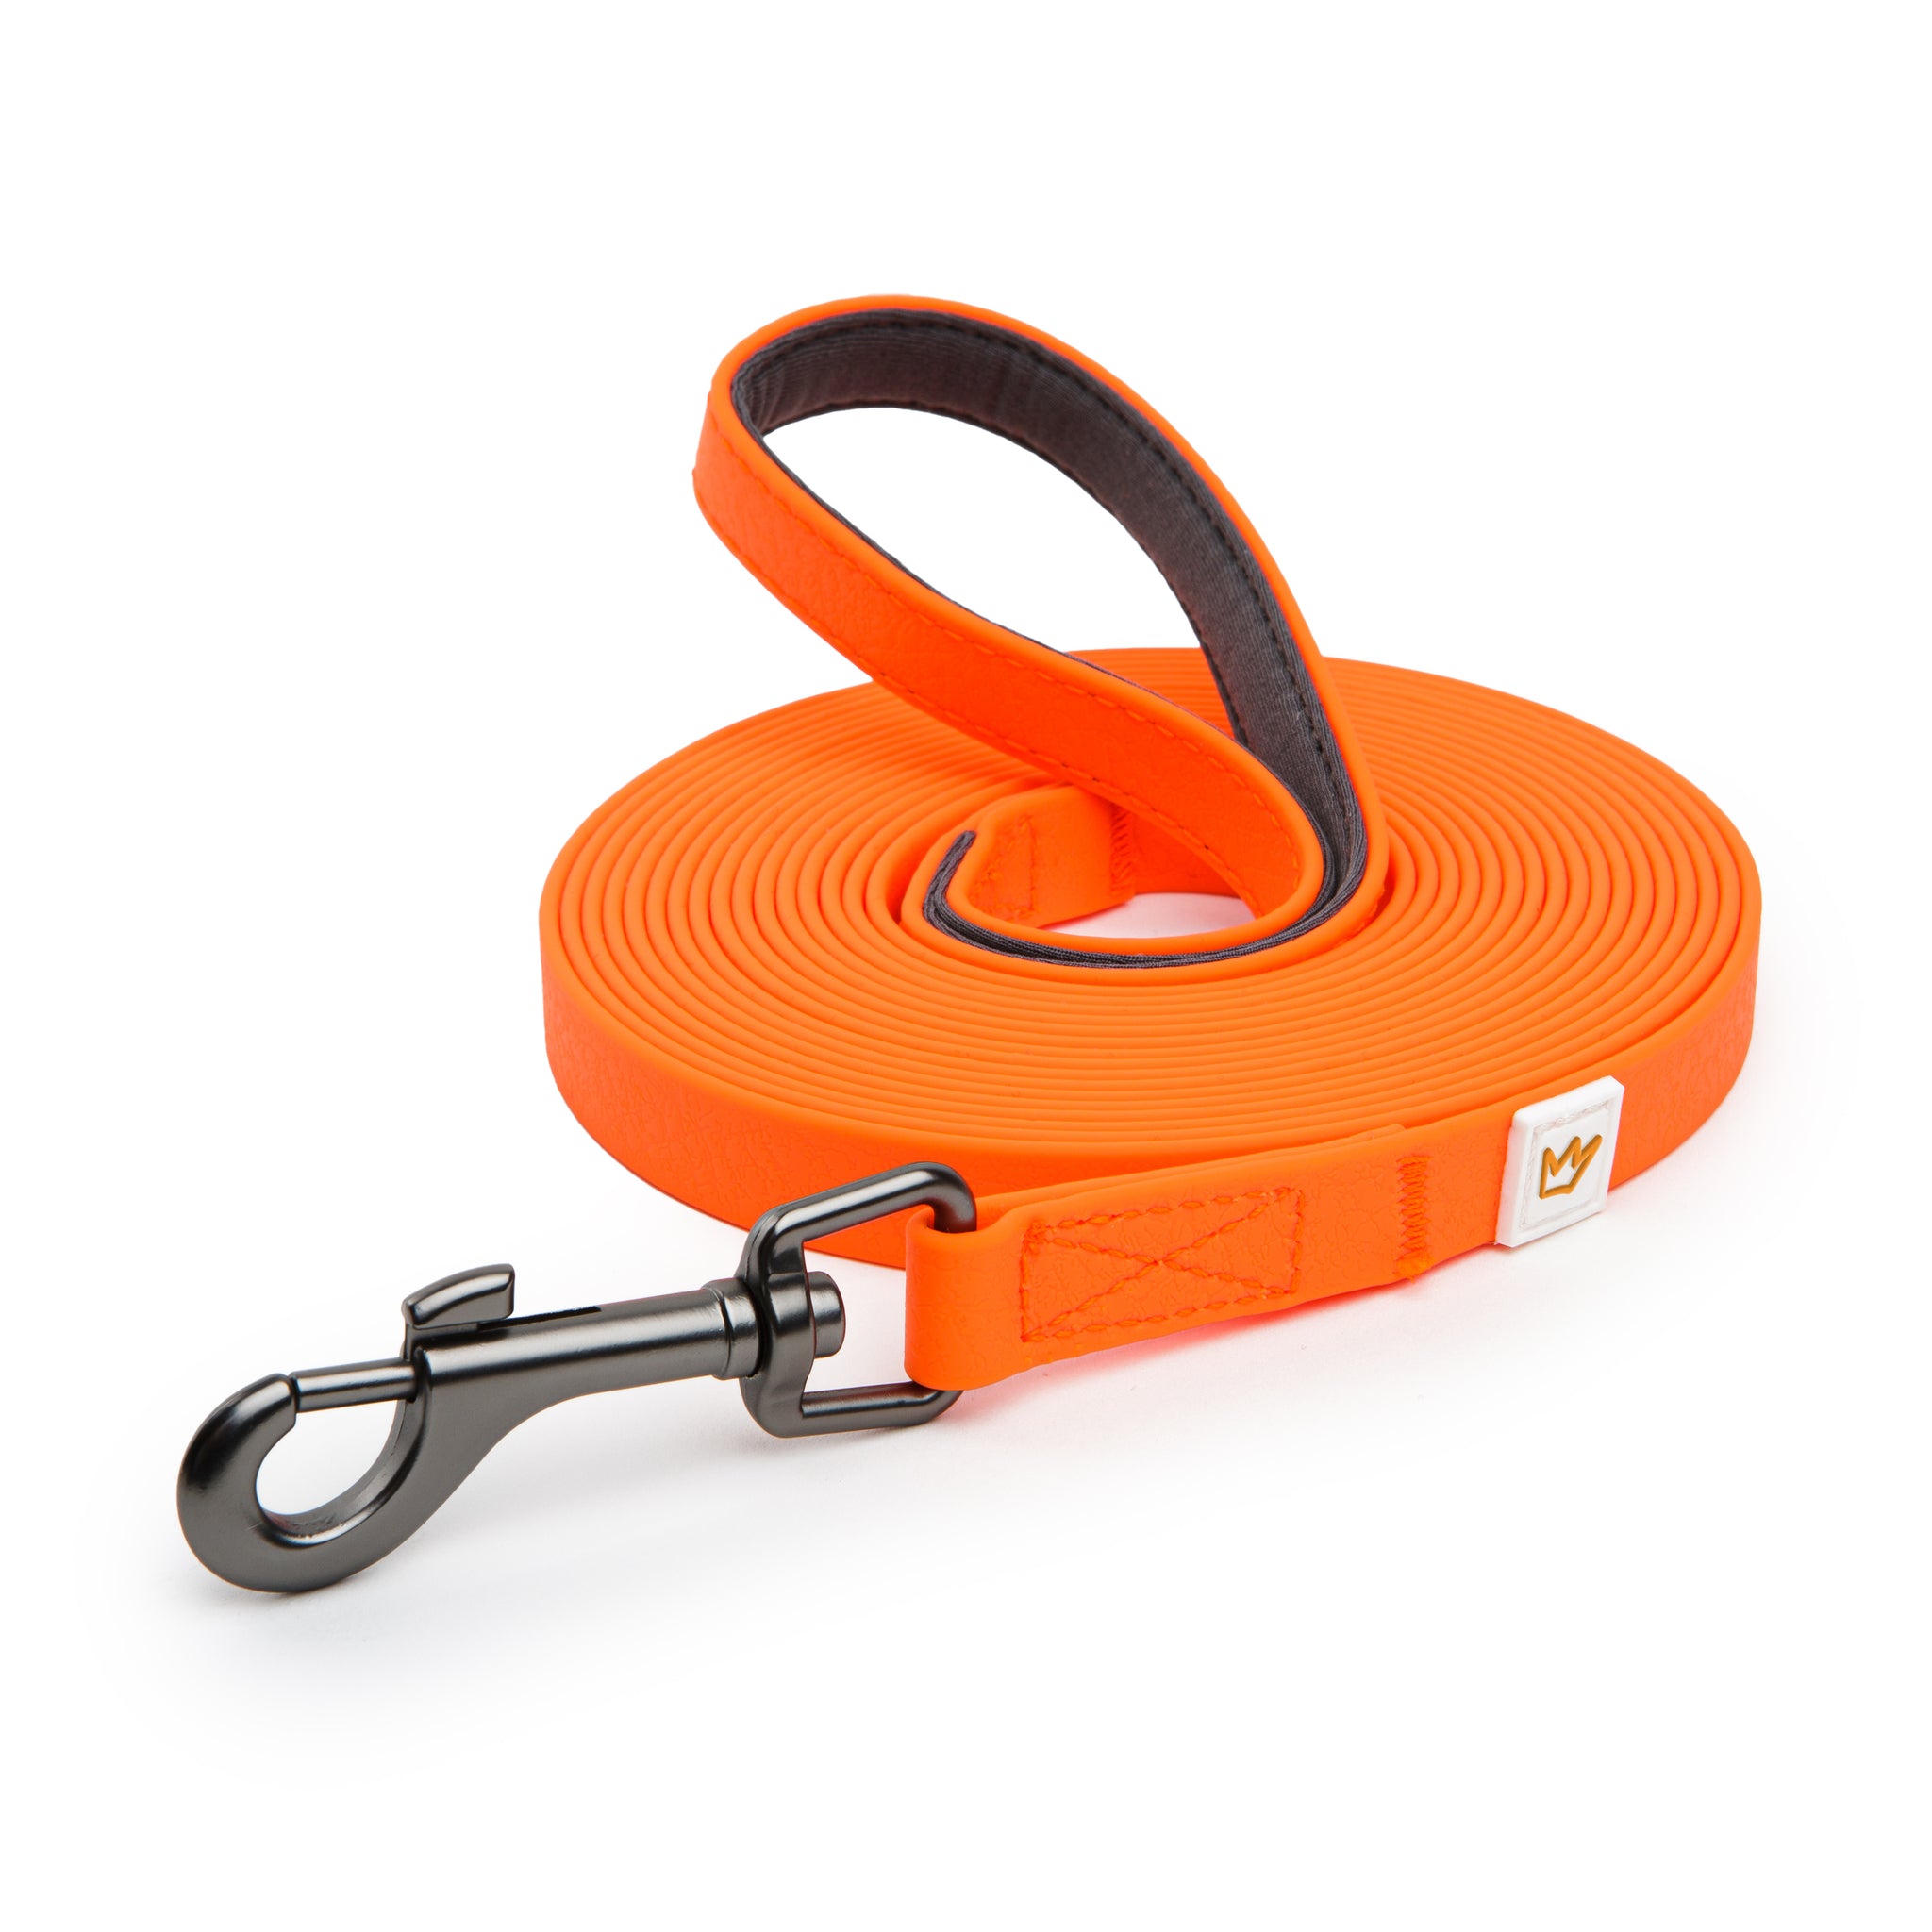 Die Biothane Schleppleine aus PVC in orange bietet Flexibilität für den Hund beim Gassi-Gehen.